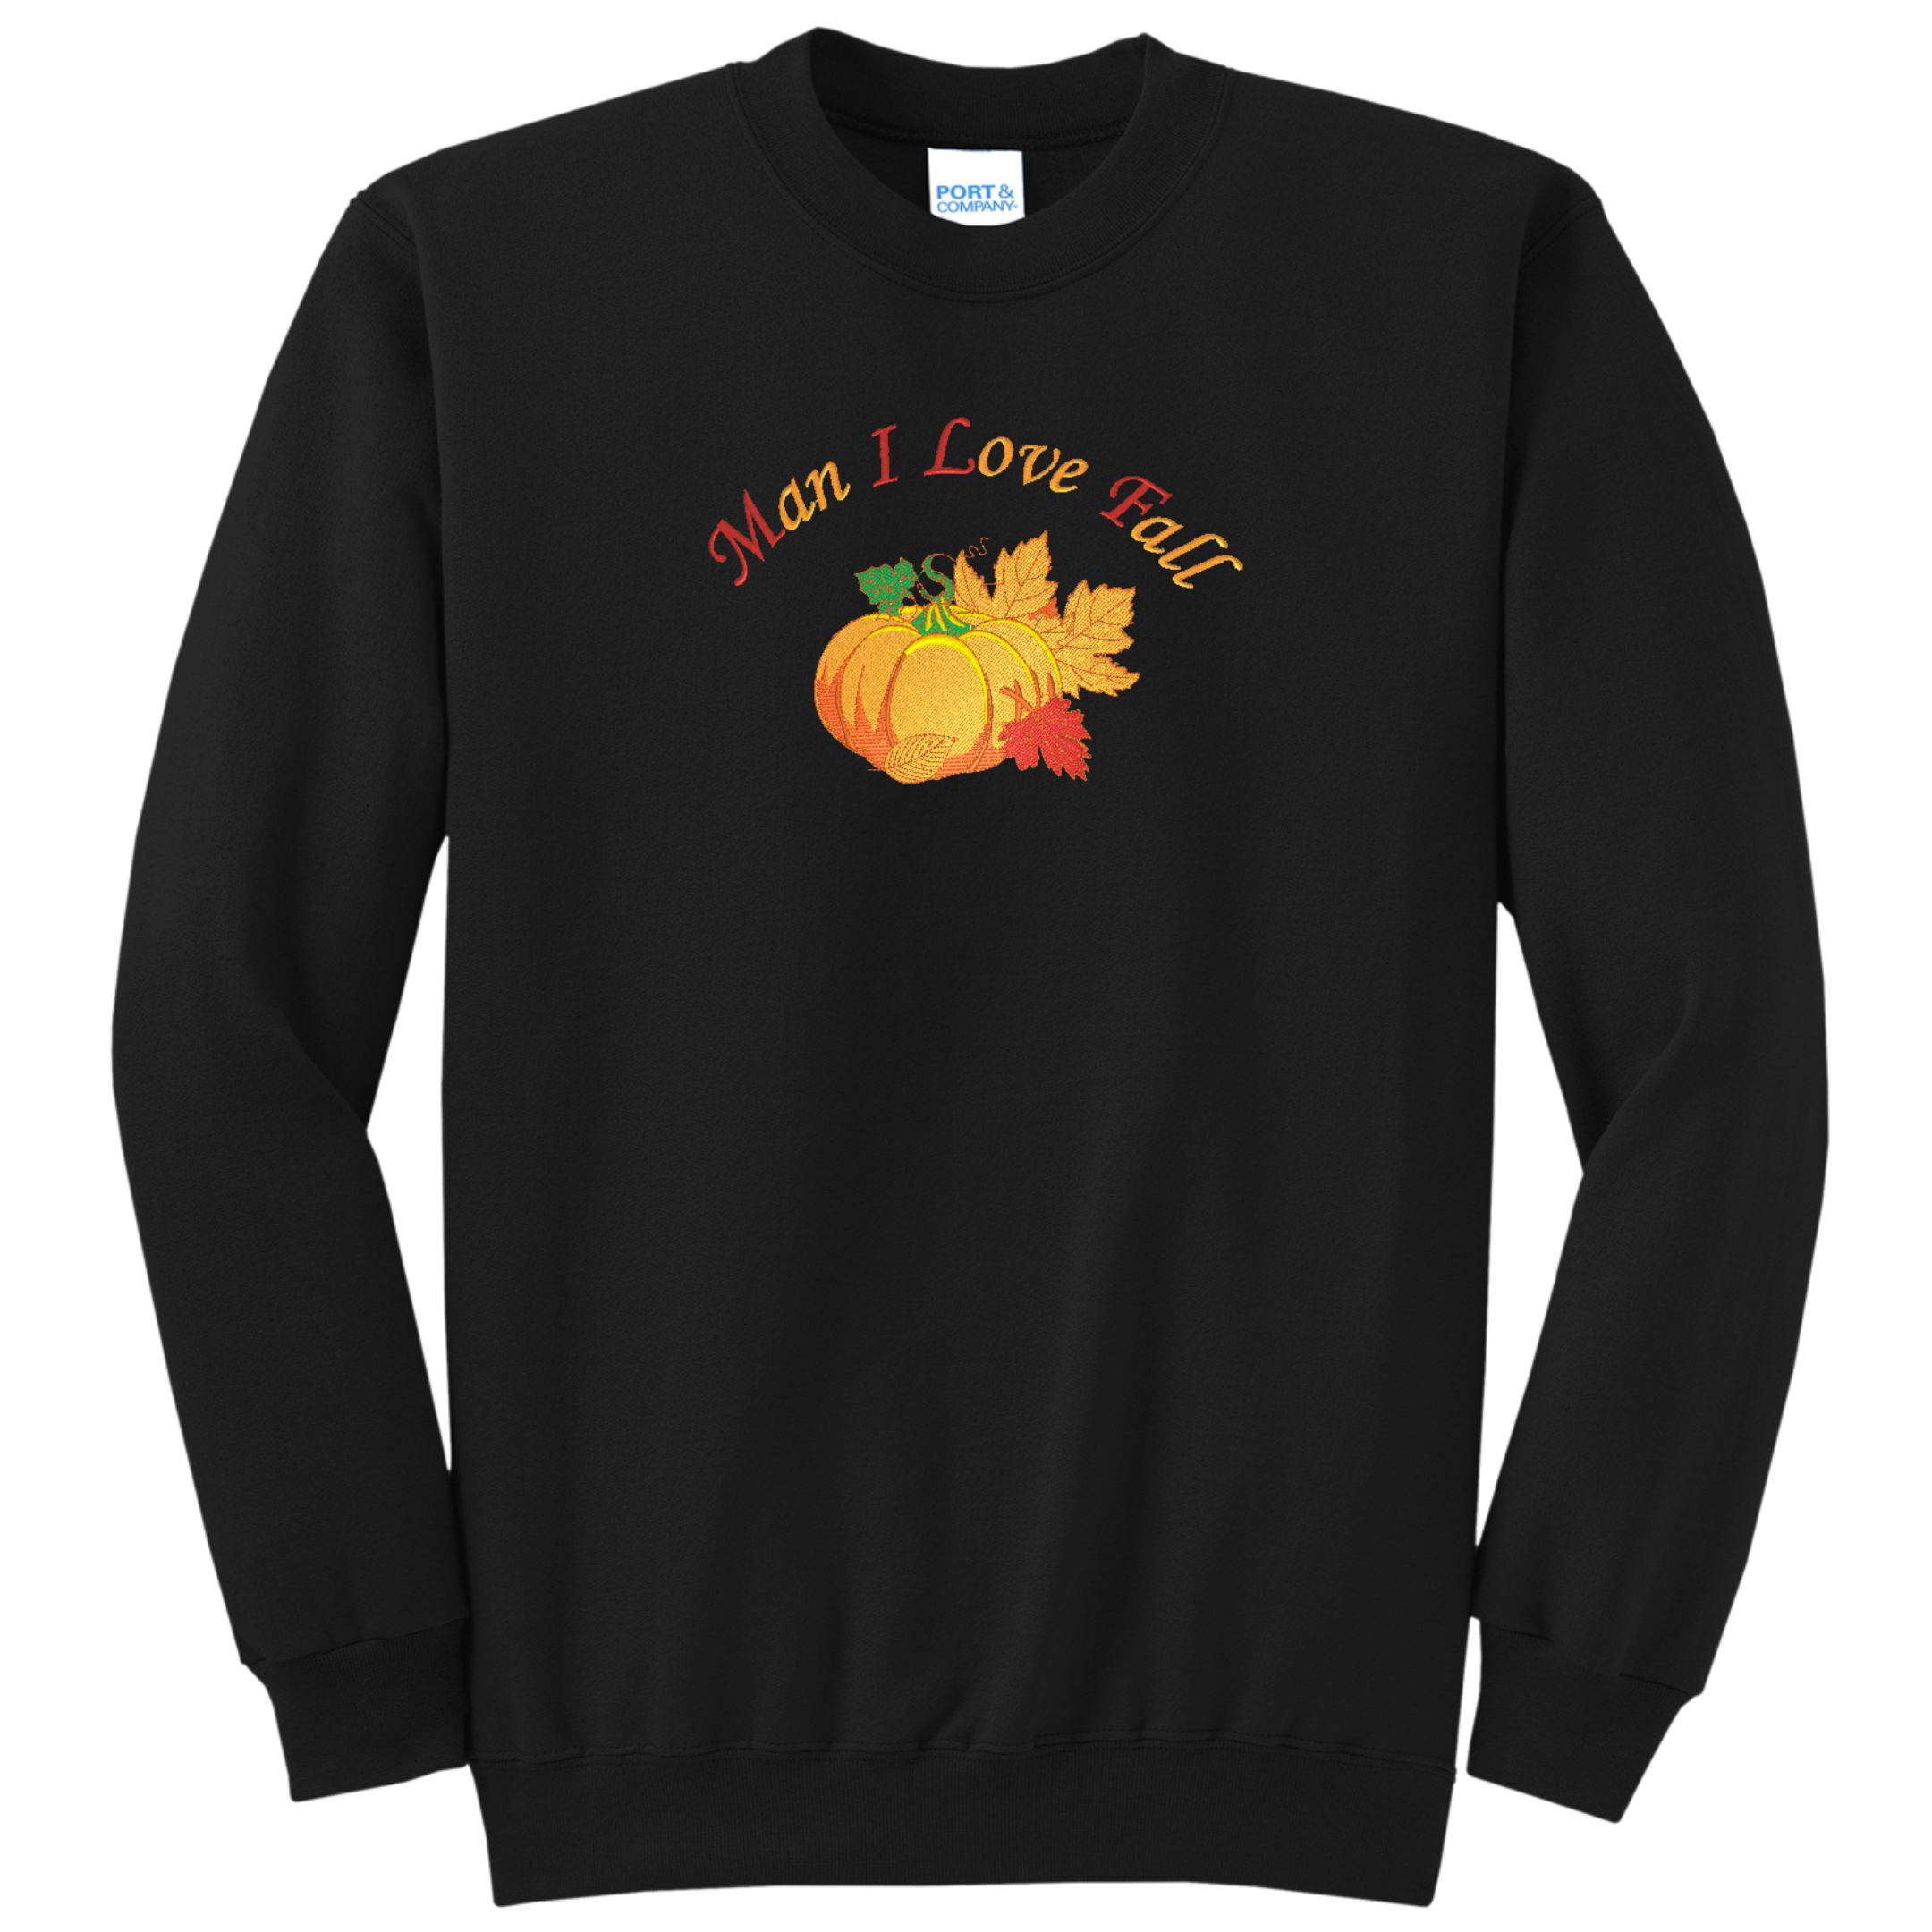 Man I Love Fall MILF Embroidered Crewneck Sweatshirt, Black, Unisex